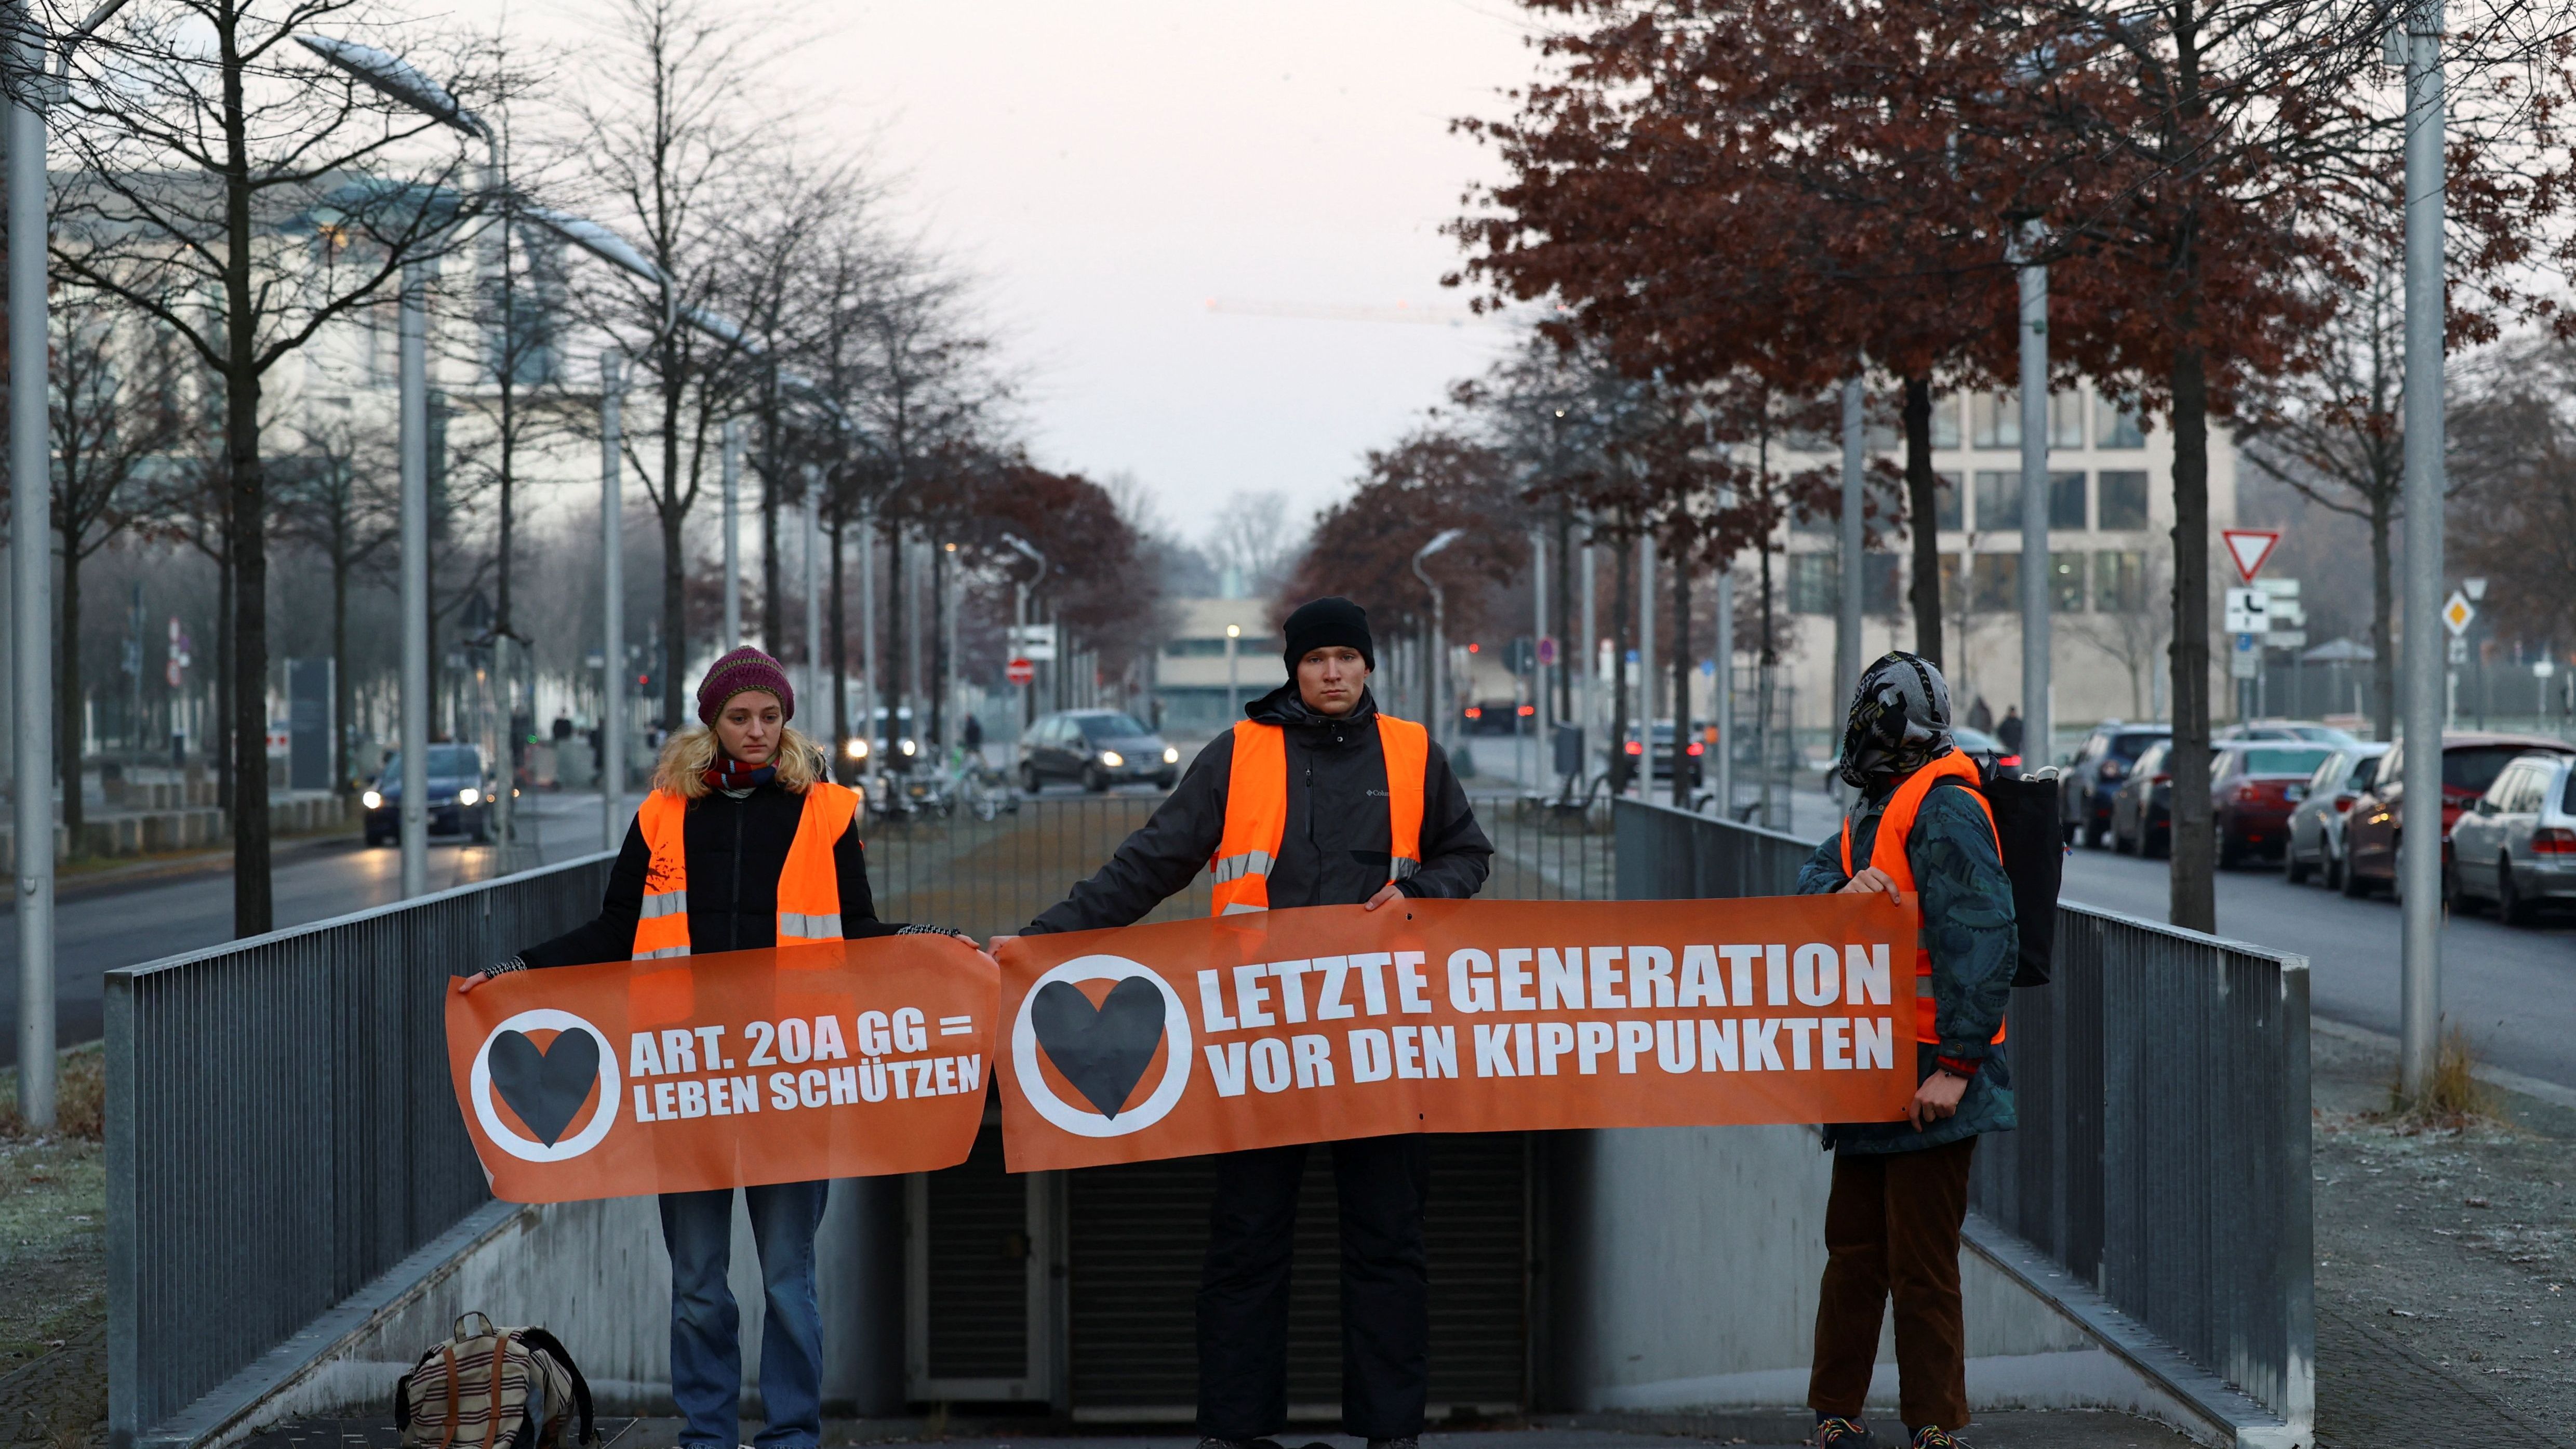 Die "Letzte Generation" gründete sich 2021. Damals begann eine siebenköpfige Gruppe am 30. August einen Hungerstreik im Berliner Regierungsviertel.